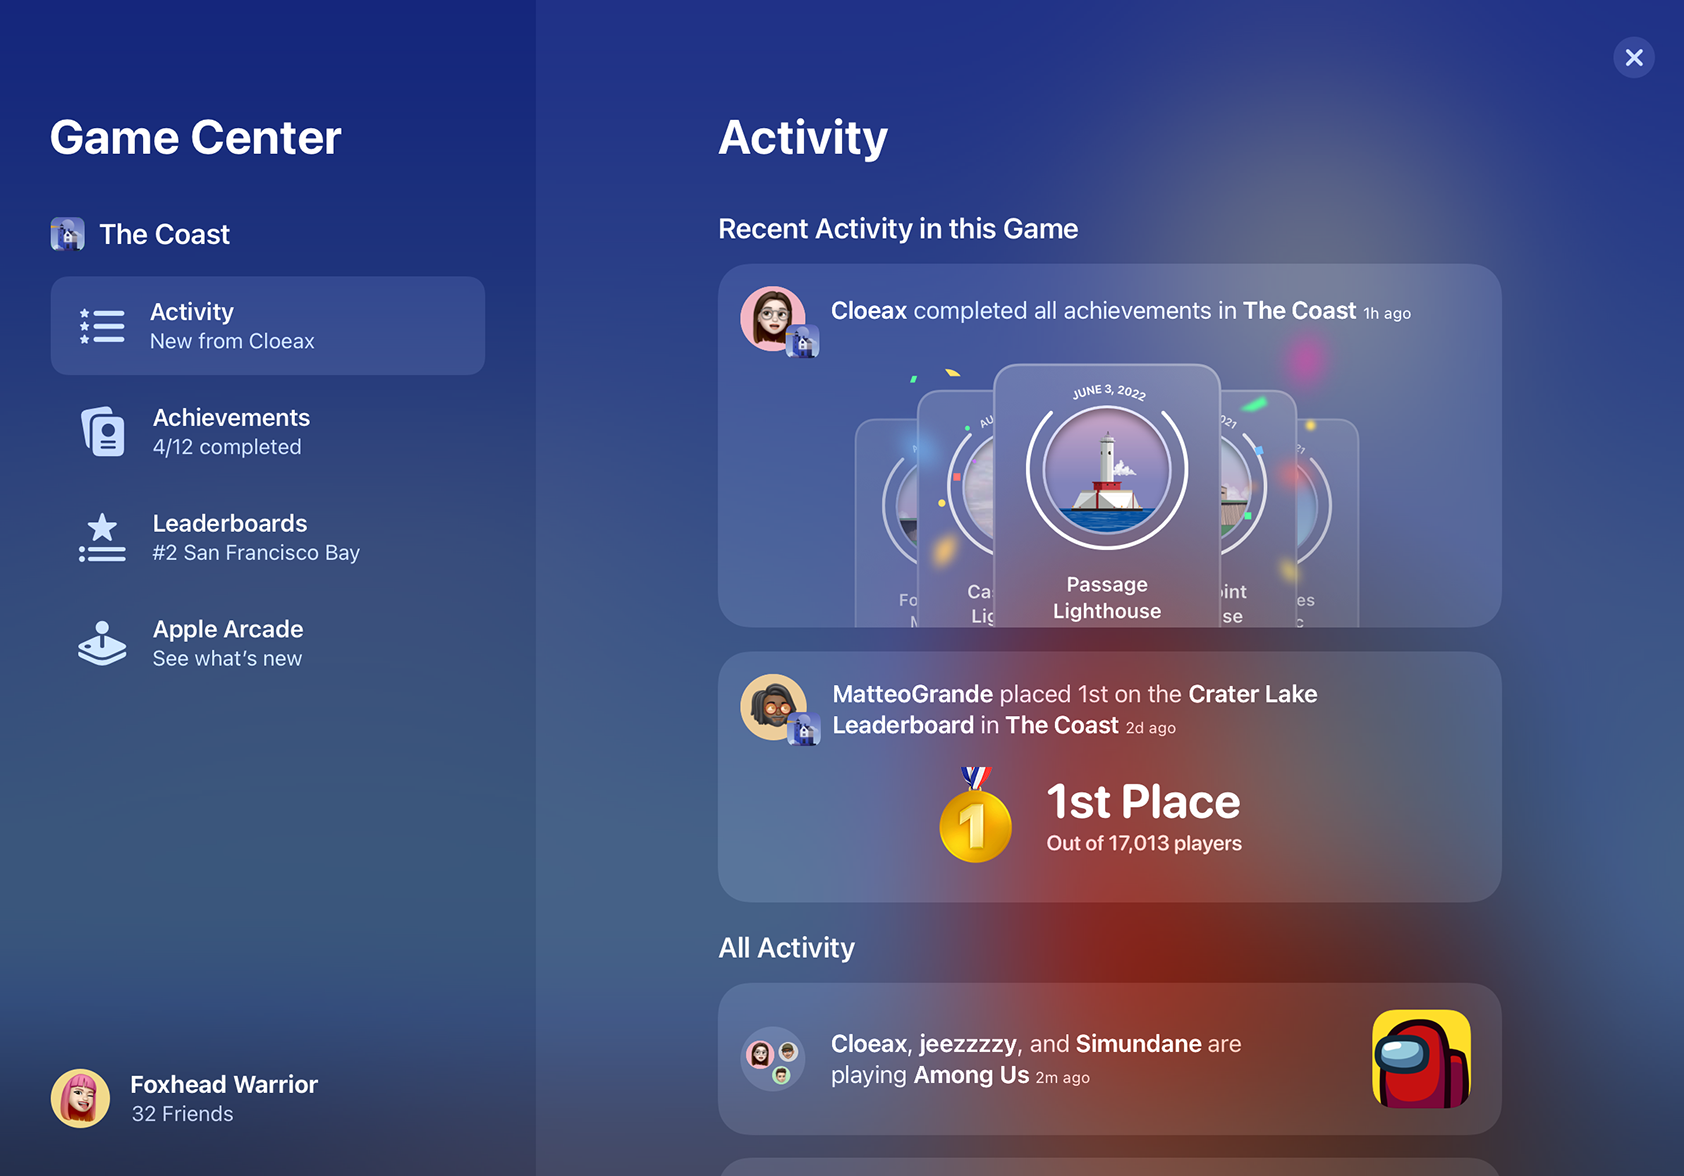 iPad Pro 上的 Game Center 中显示了近期活动